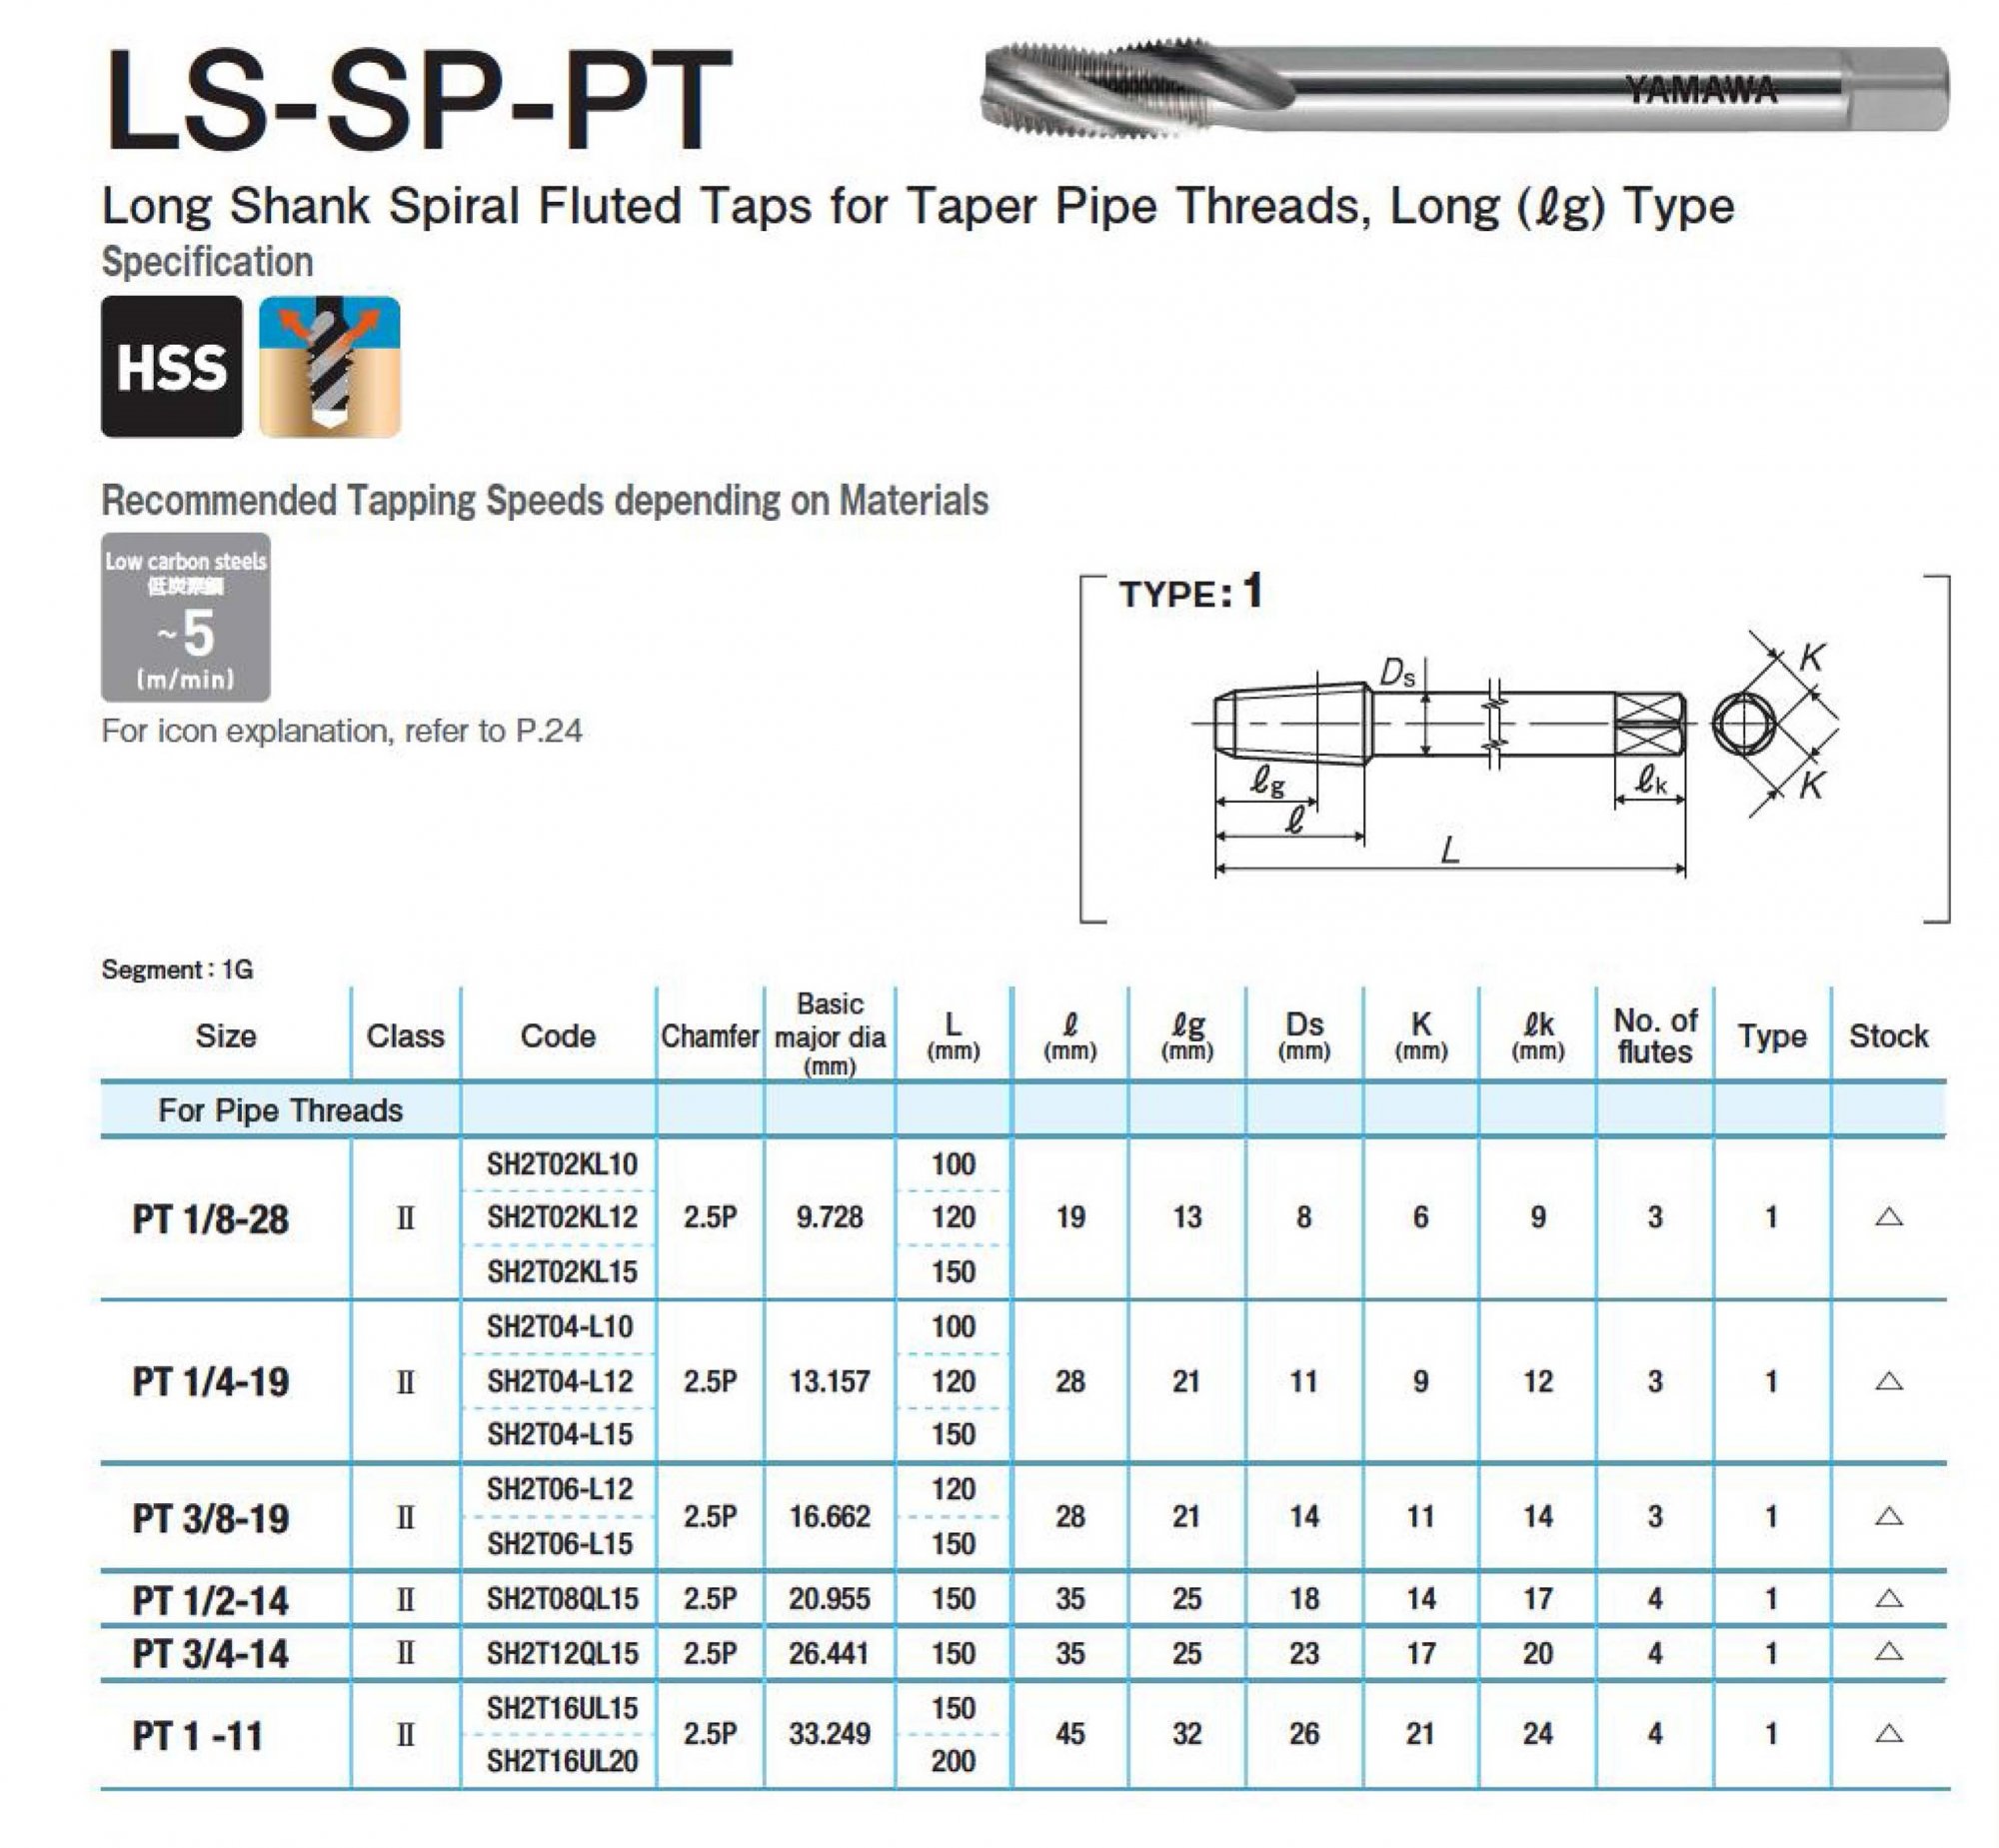 LS-SP-PT